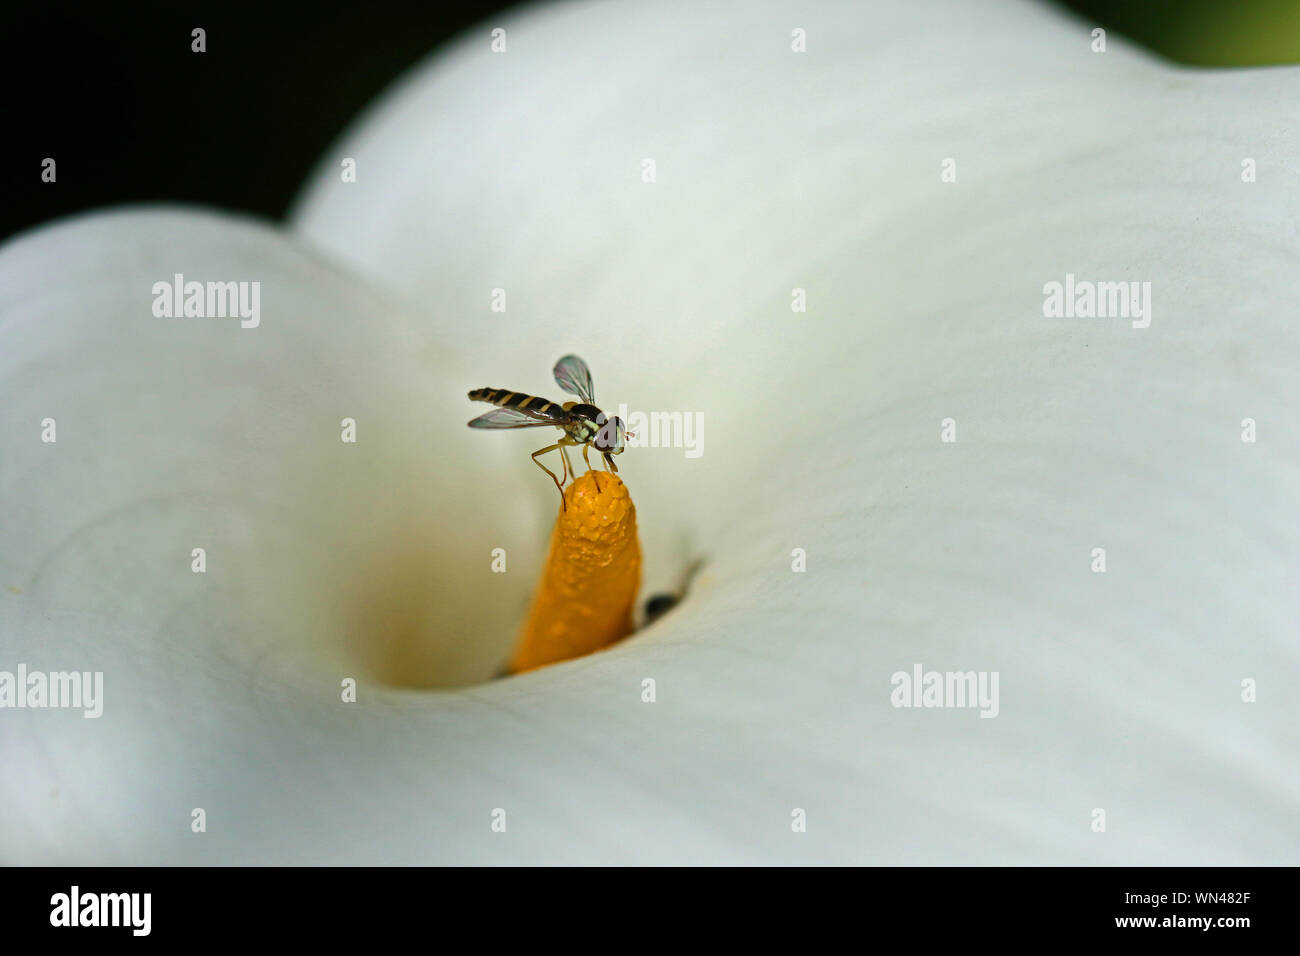 Winzige Schweben, Fliegen oder Blume fliegen Latin Eupeodes volucris, Familie Syrphidae Fütterung auf ein arum Lily oder Calla lily Zantedeschia aethiopica Familie der Araceae Stockfoto